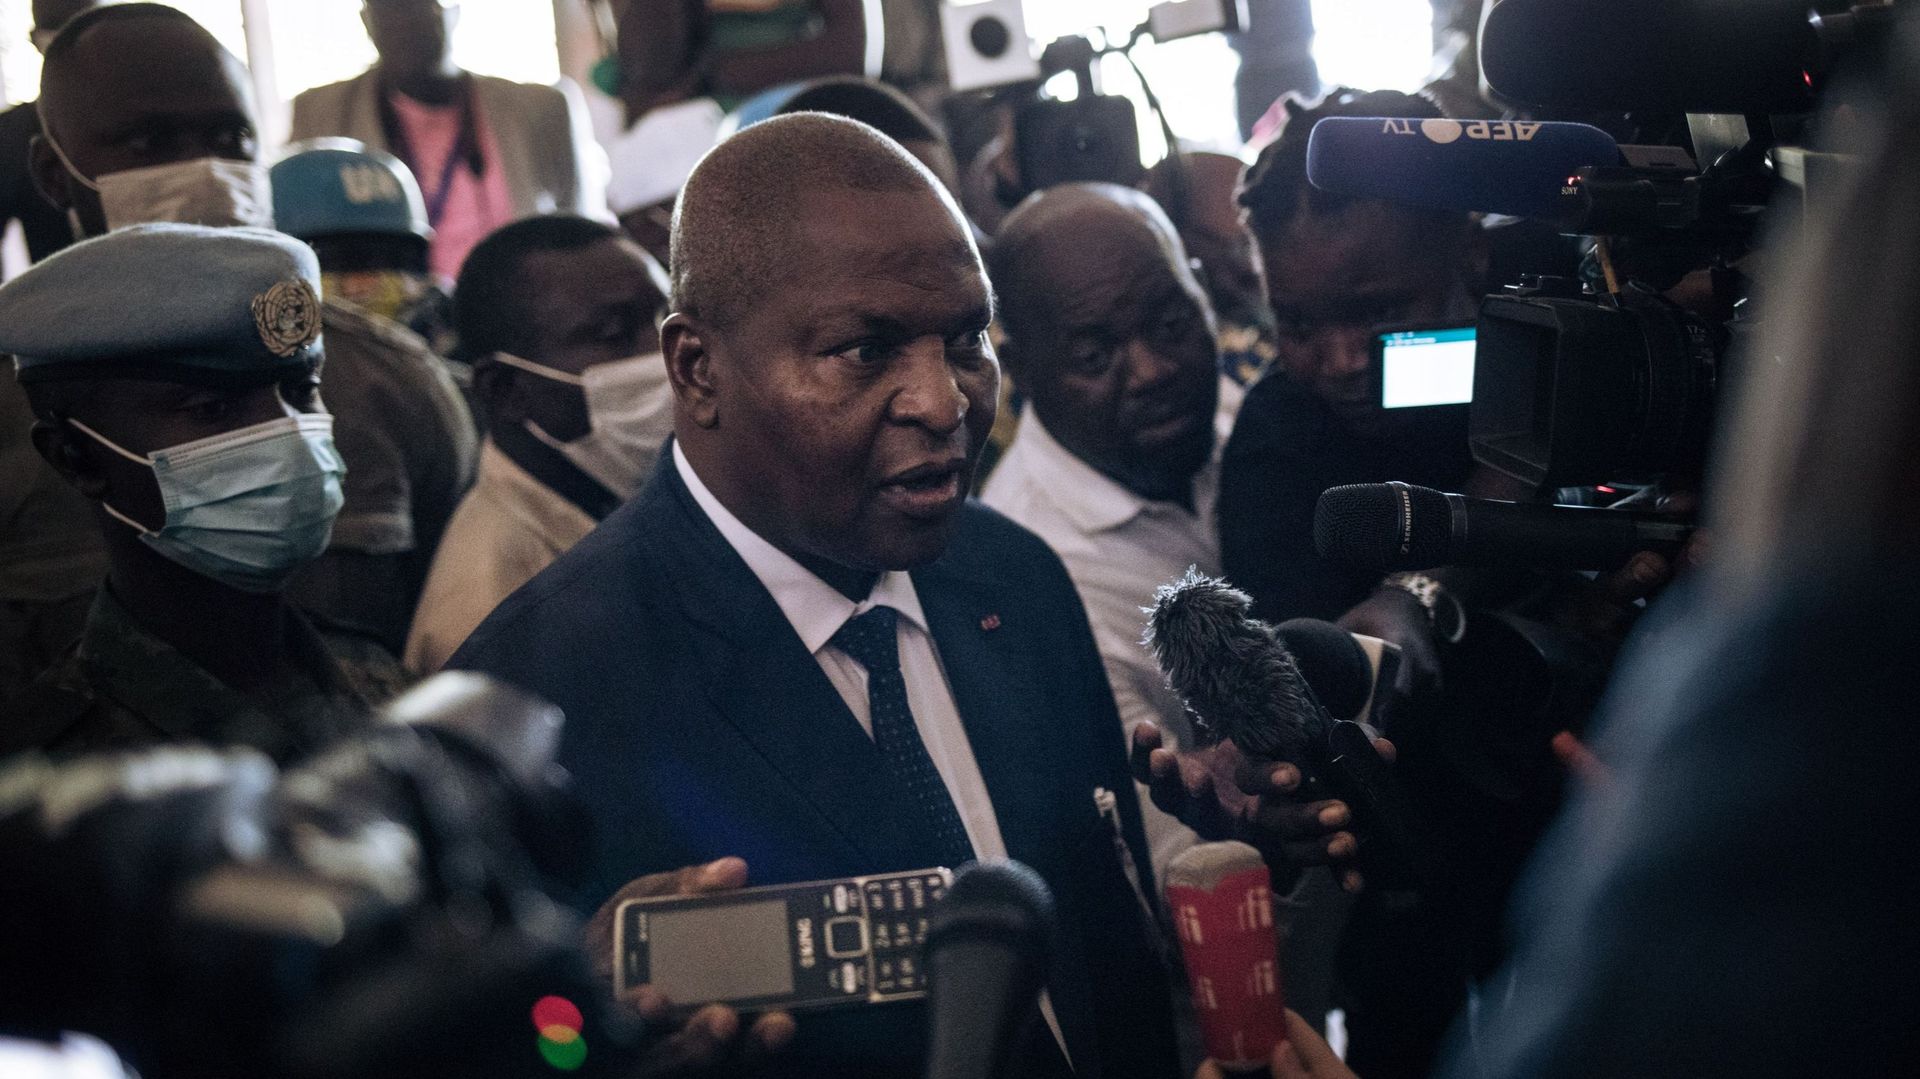 L'opposition conteste un scrutin "discrédité" après la réélection du président centrafricain